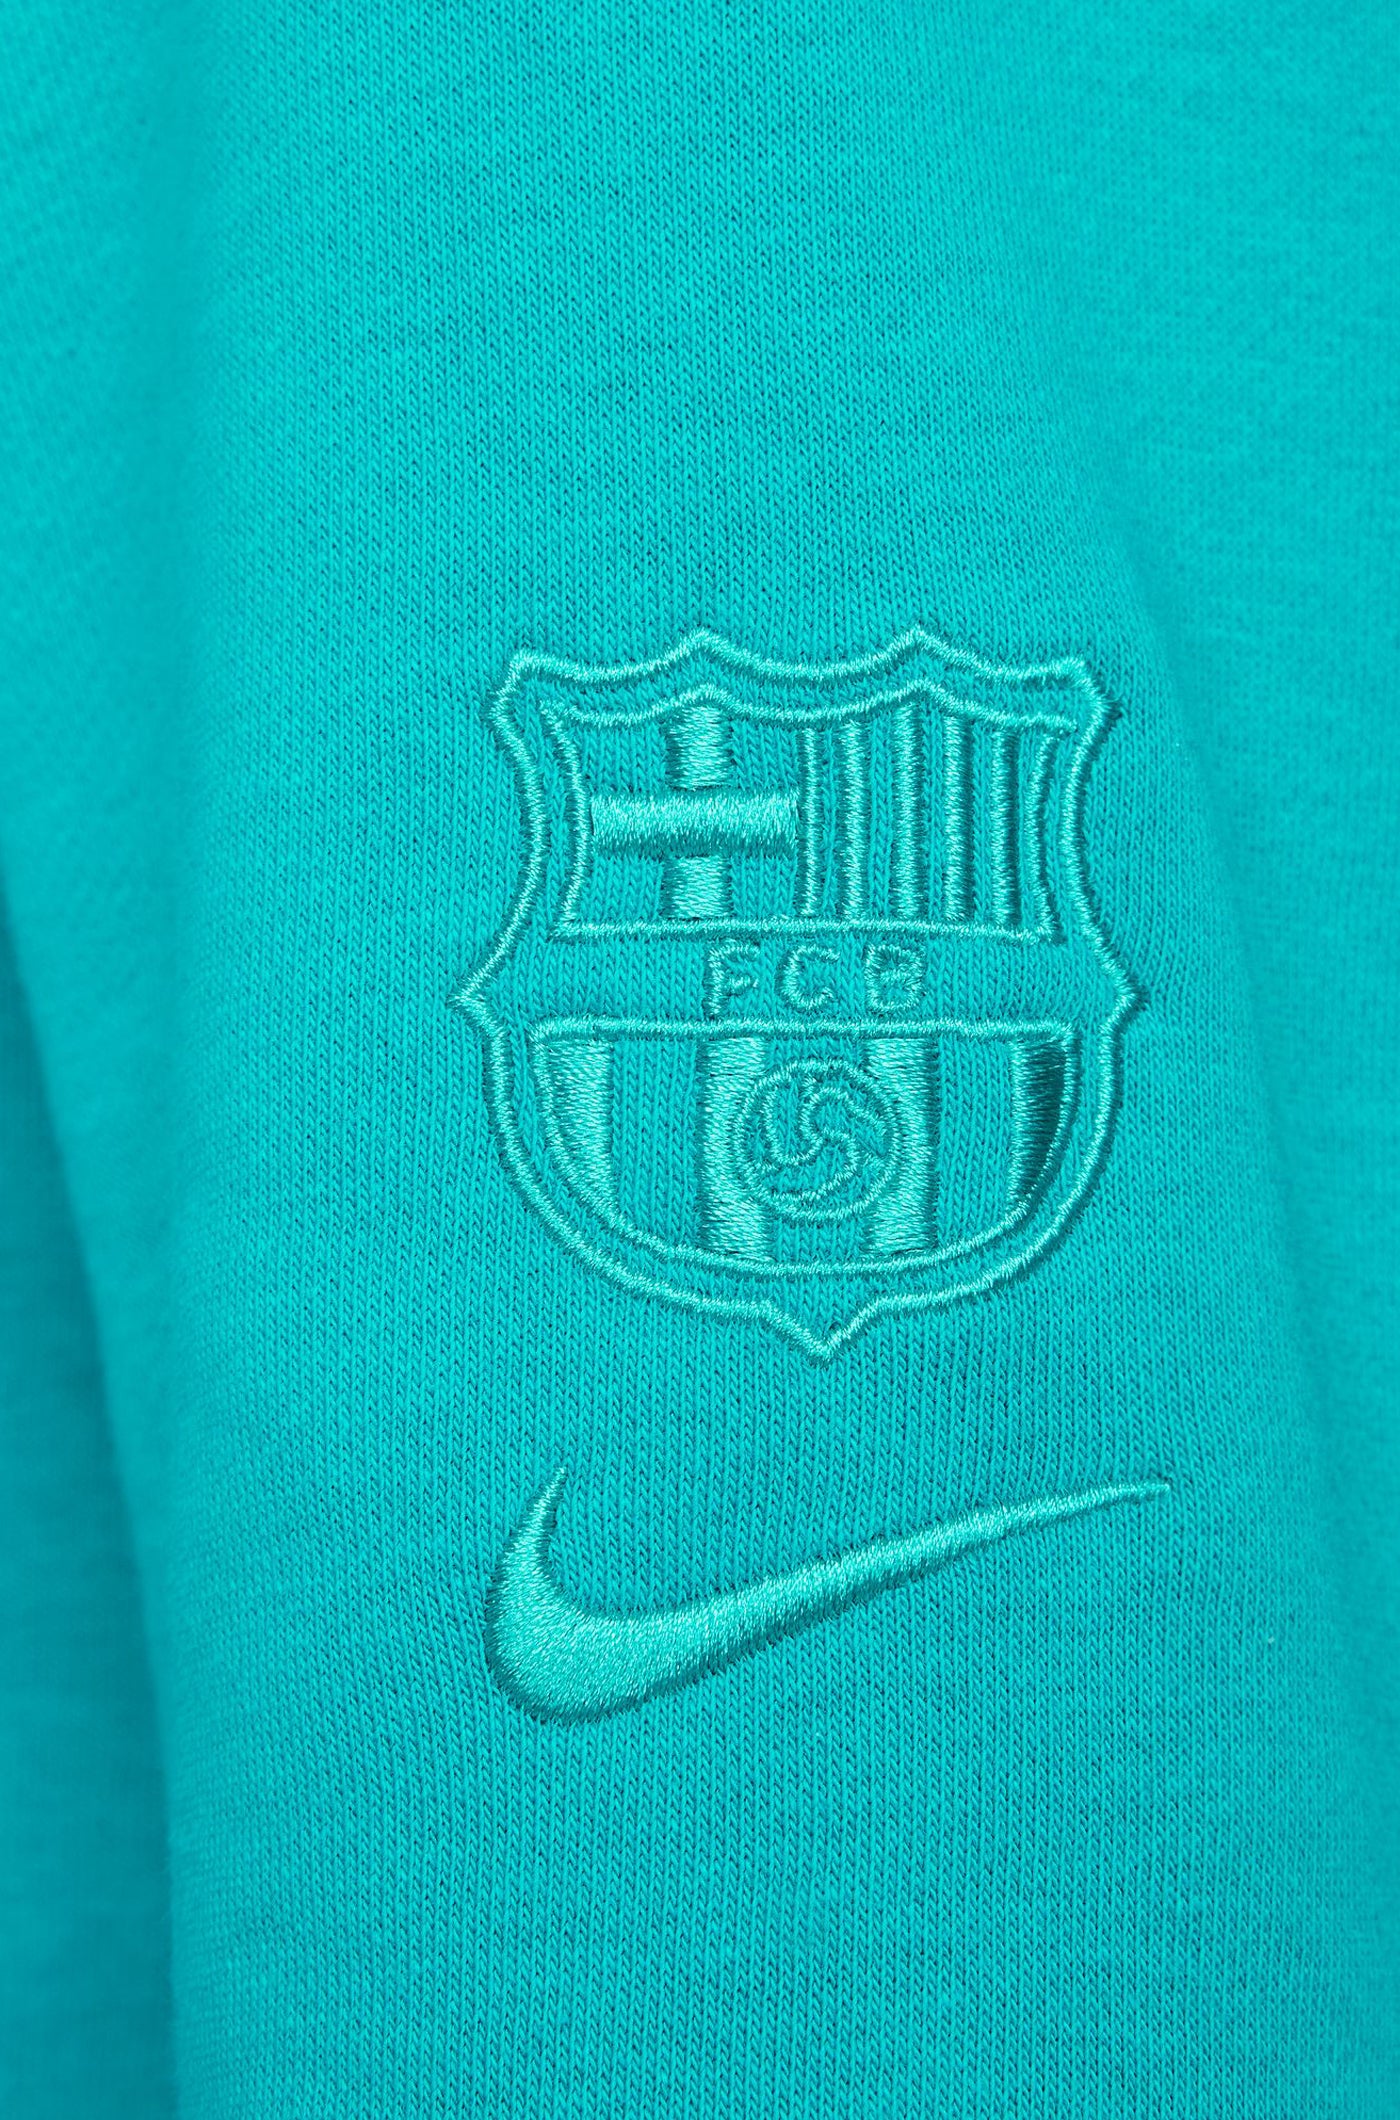 Hooded sweatshirt blue Barça Nike - Women – Barça Official Store Spotify  Camp Nou